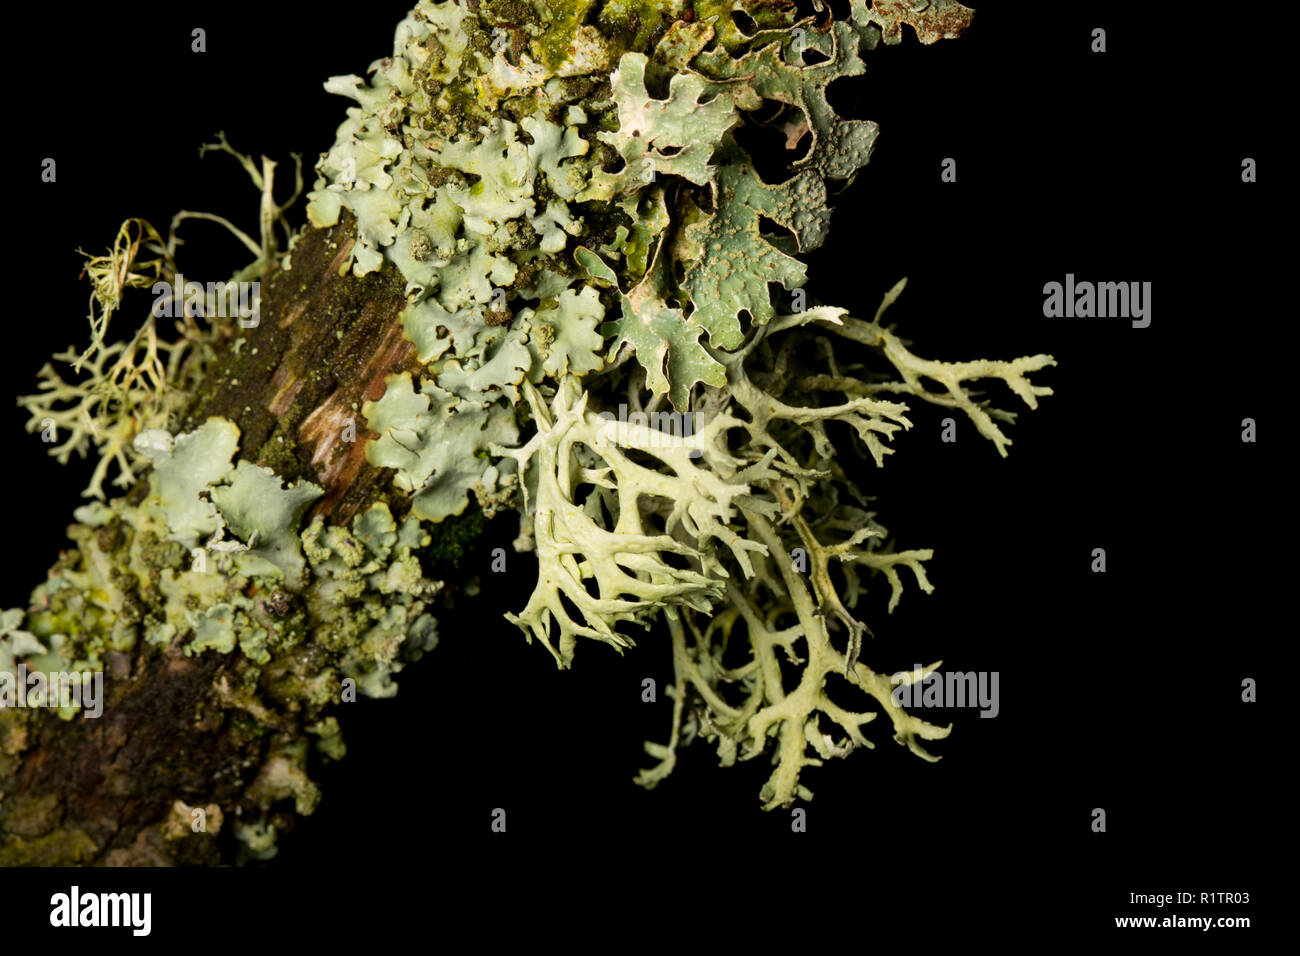 La mousse de chêne, Everania prunastri lichen, poussant sur une branche d'arbre dans une zone rurale de bois. Les lichens sont sensibles à la pollution de l'air. La croissance des lichens Banque D'Images